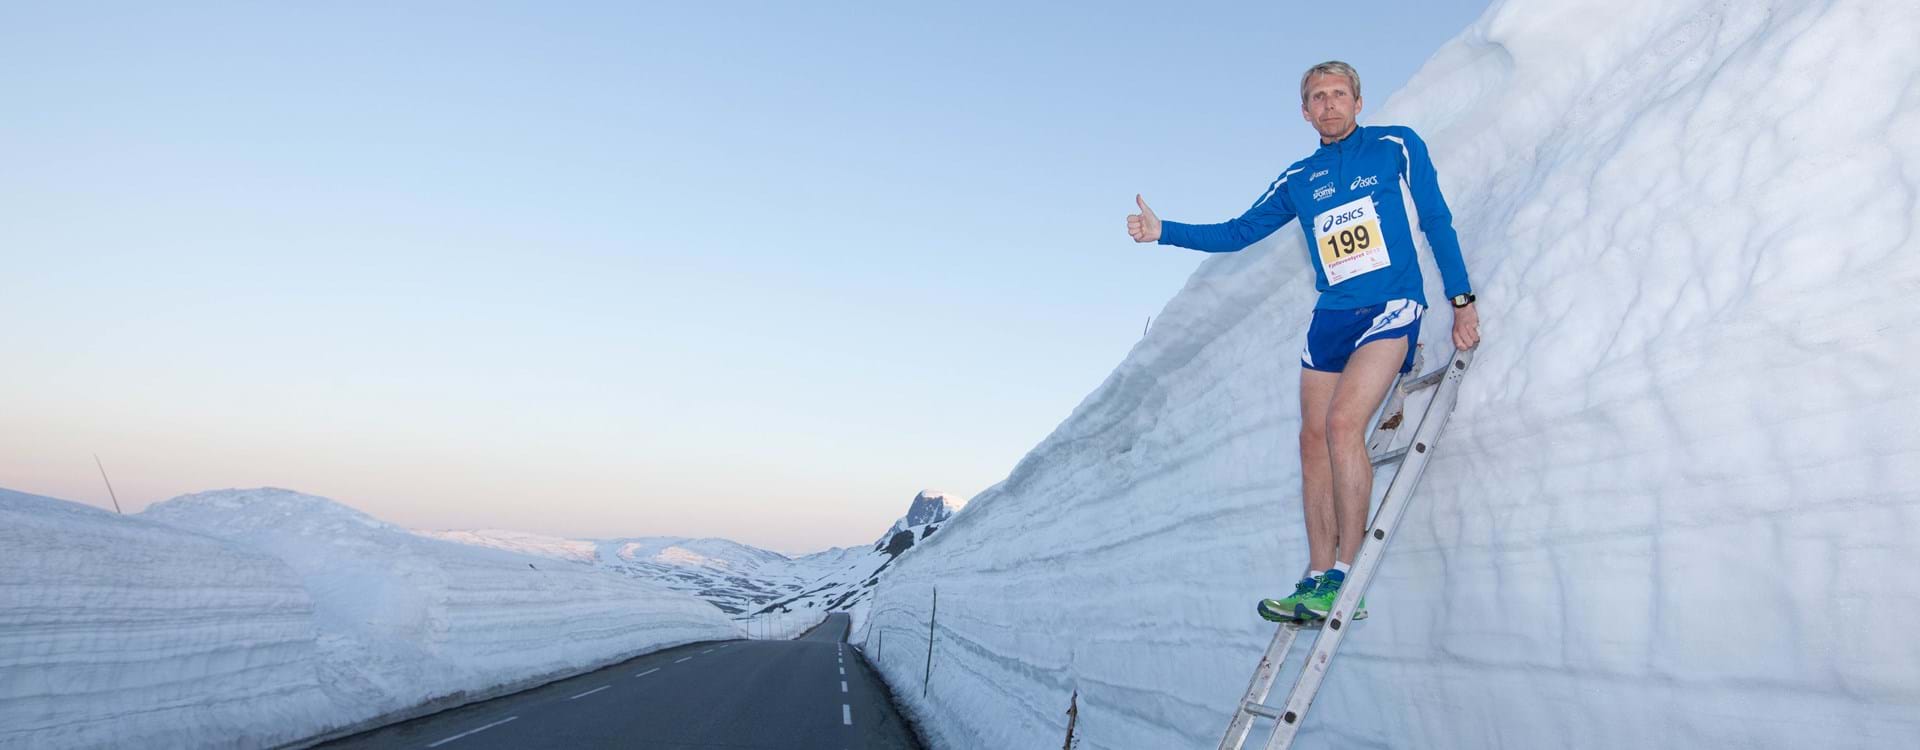 Enkelte år, som i 2012 og i 2015, har det vært mye snø over Valdresflya før Fjellmaraton start